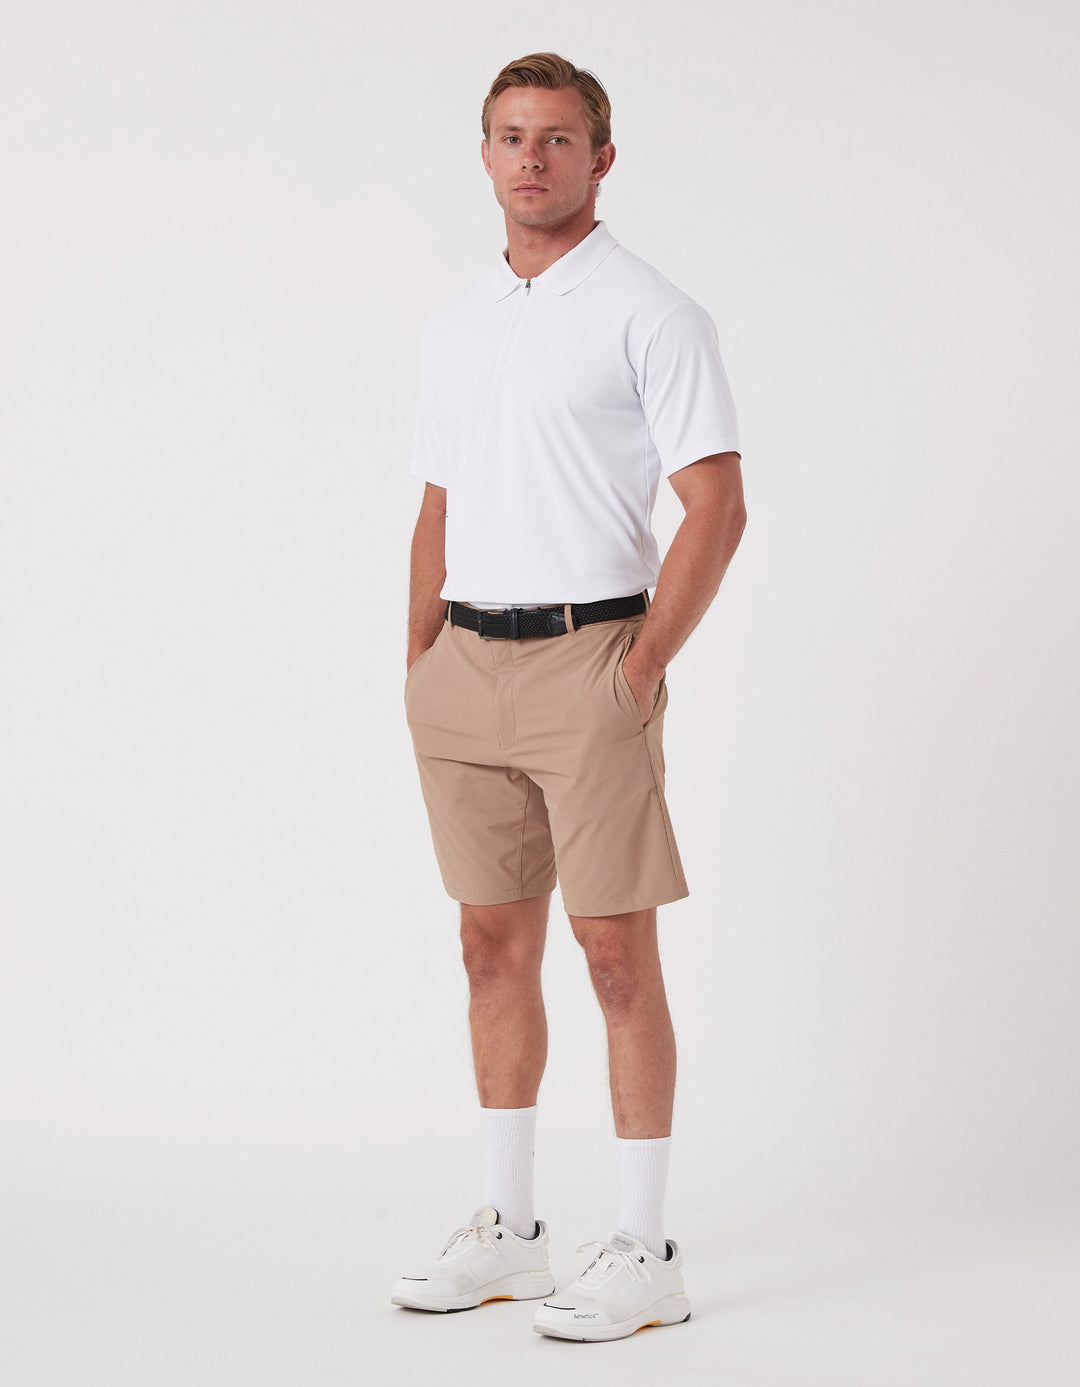 REC GEN - Men's DriForm Golf Short Dk - Tan